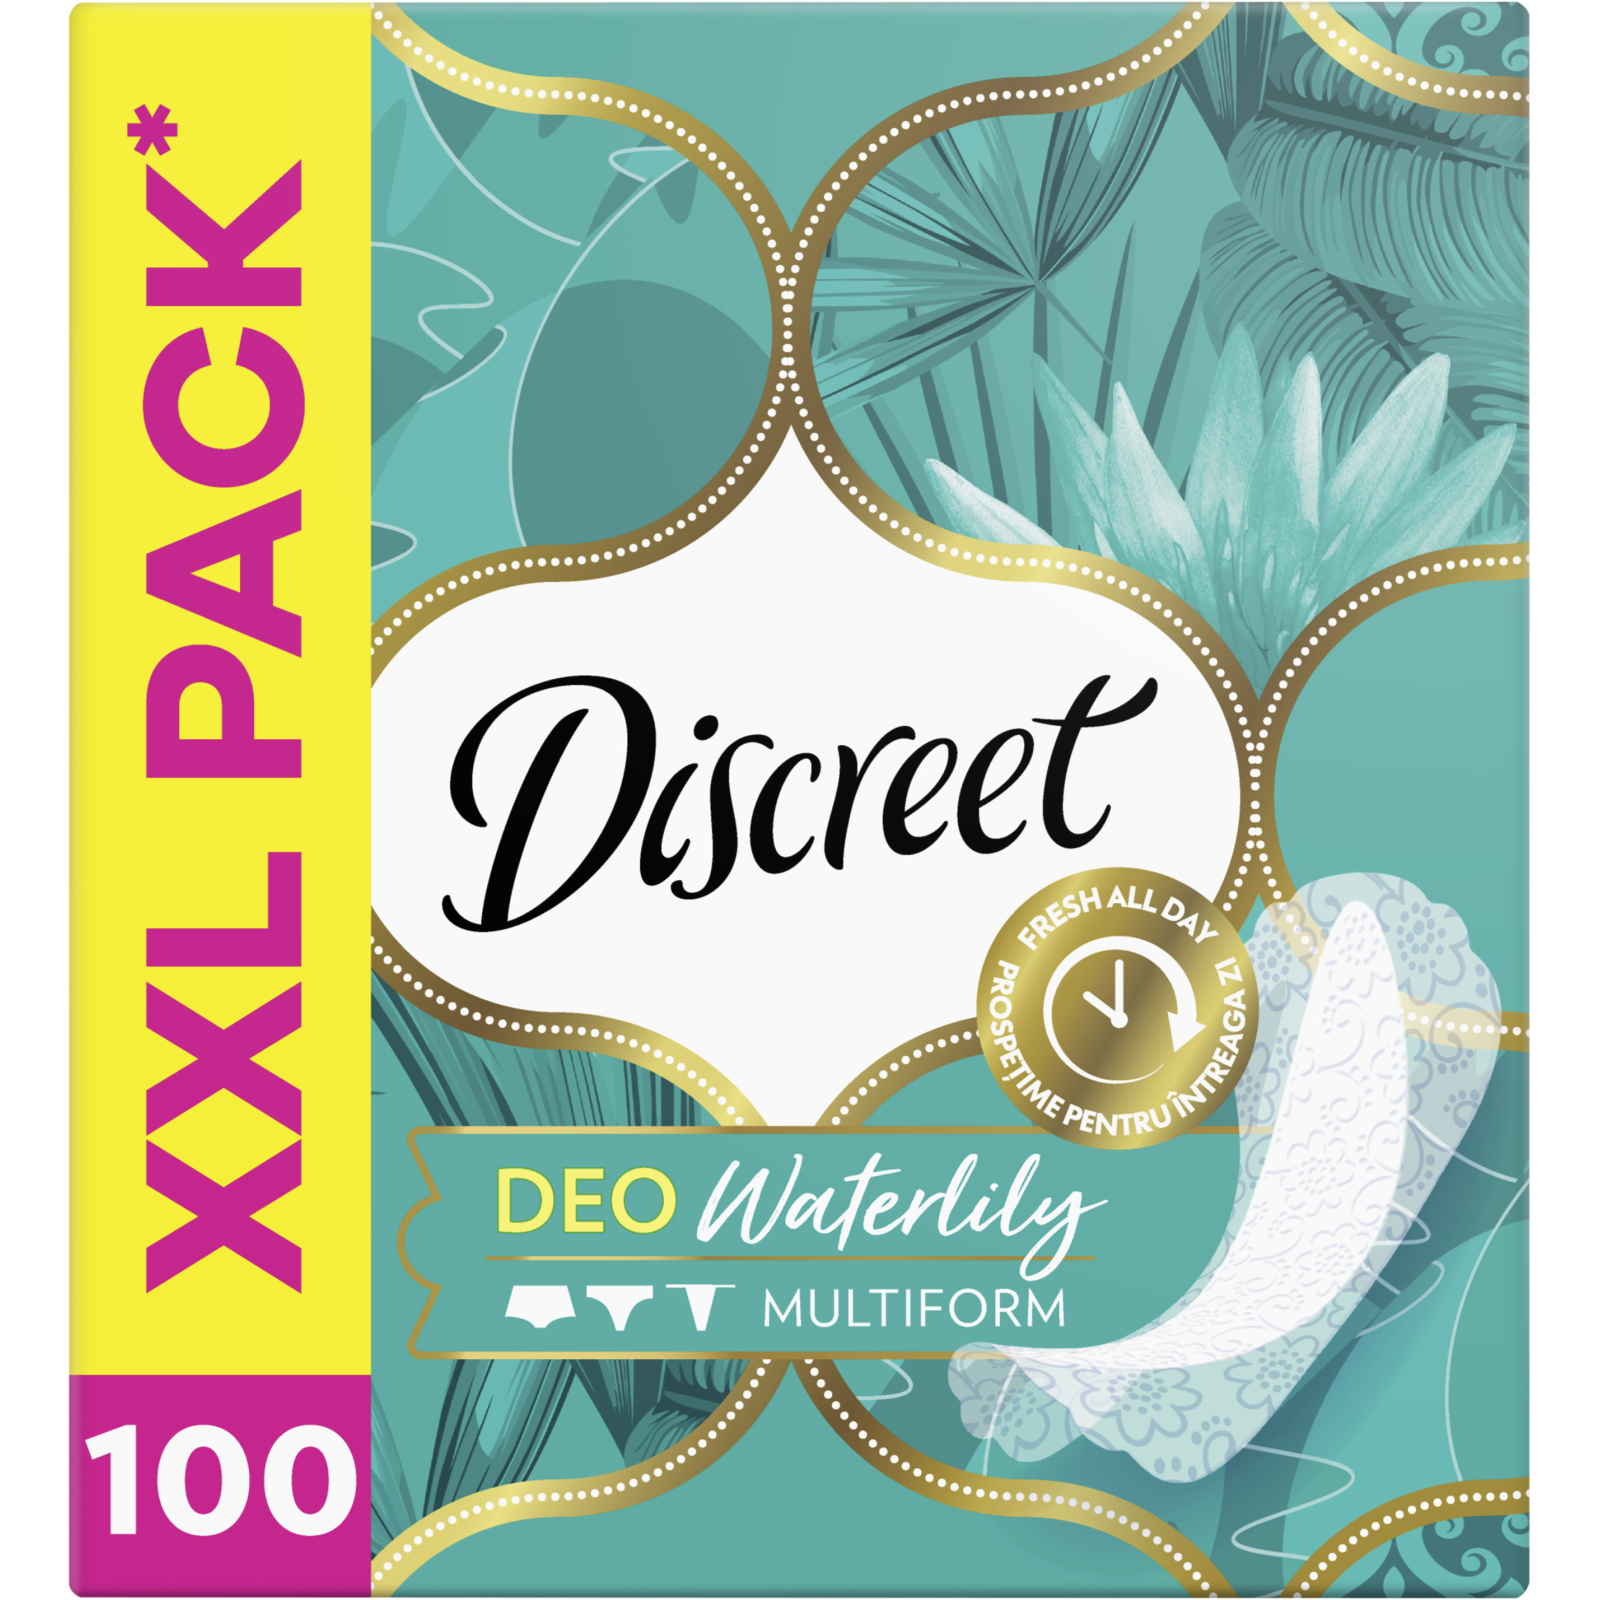 Щоденні прокладки Discreet Deo Waterlily 120 шт. (8700216234245) зображення 2